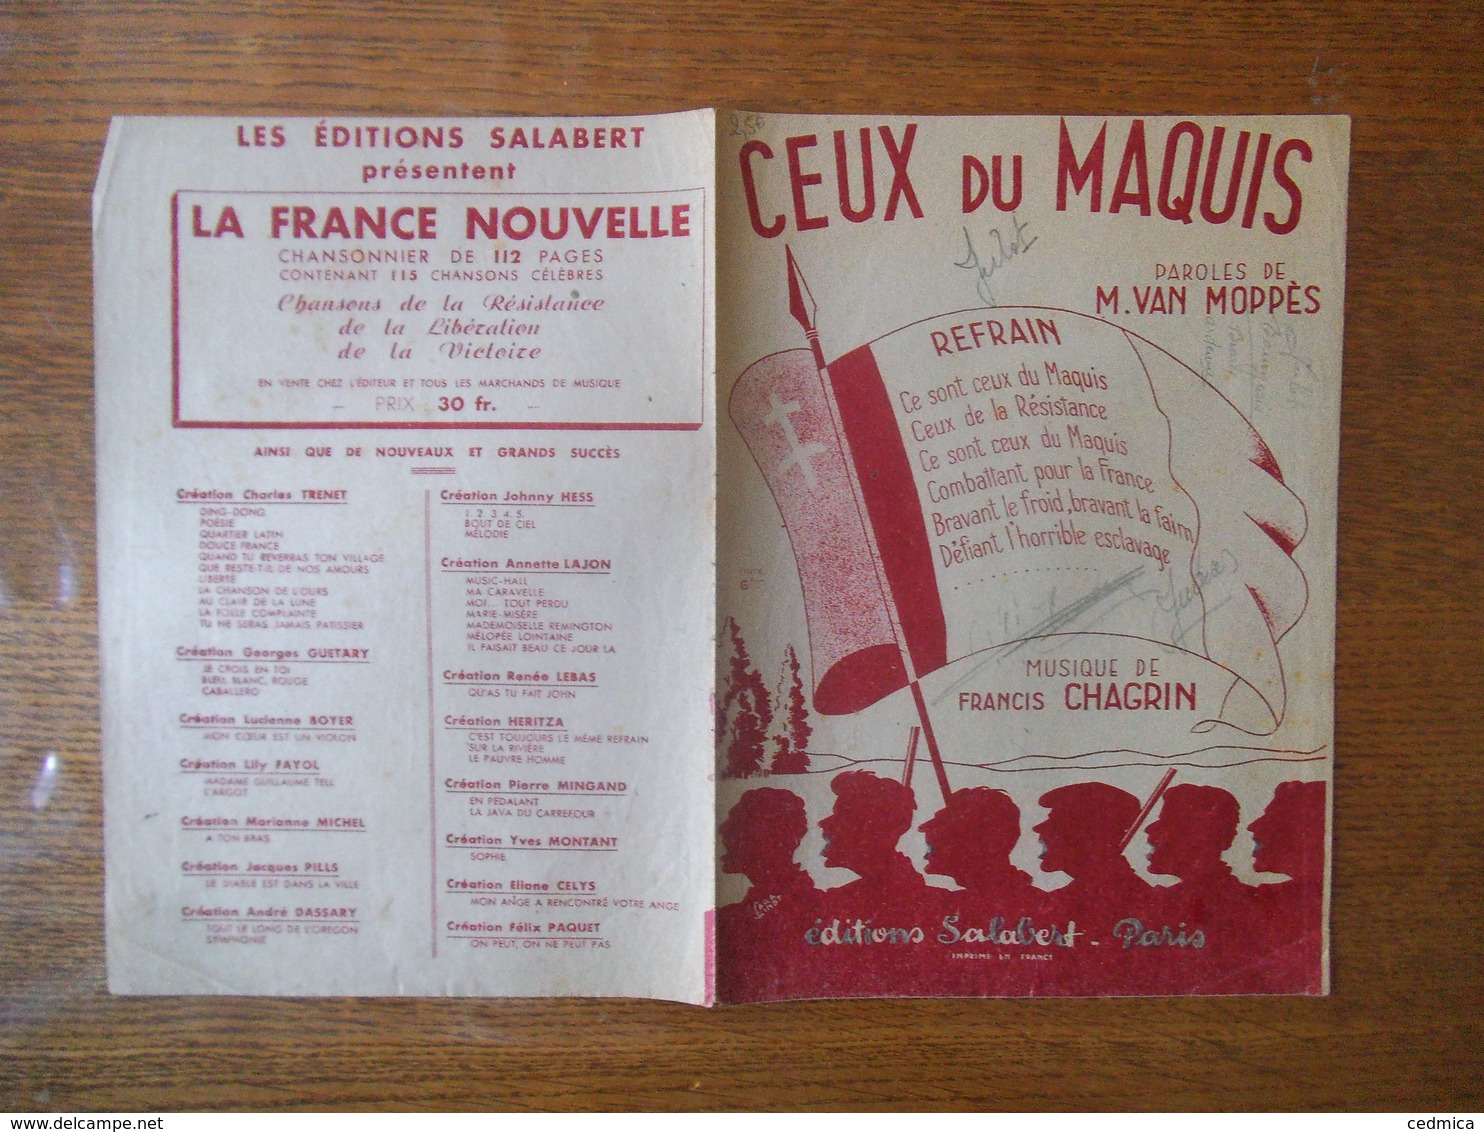 CEUX DU MAQUIS PAROLES DE M. VAN MOPPES MUSIQUE DE FRANCIS CHAGRIN MCMXLIV - Noten & Partituren